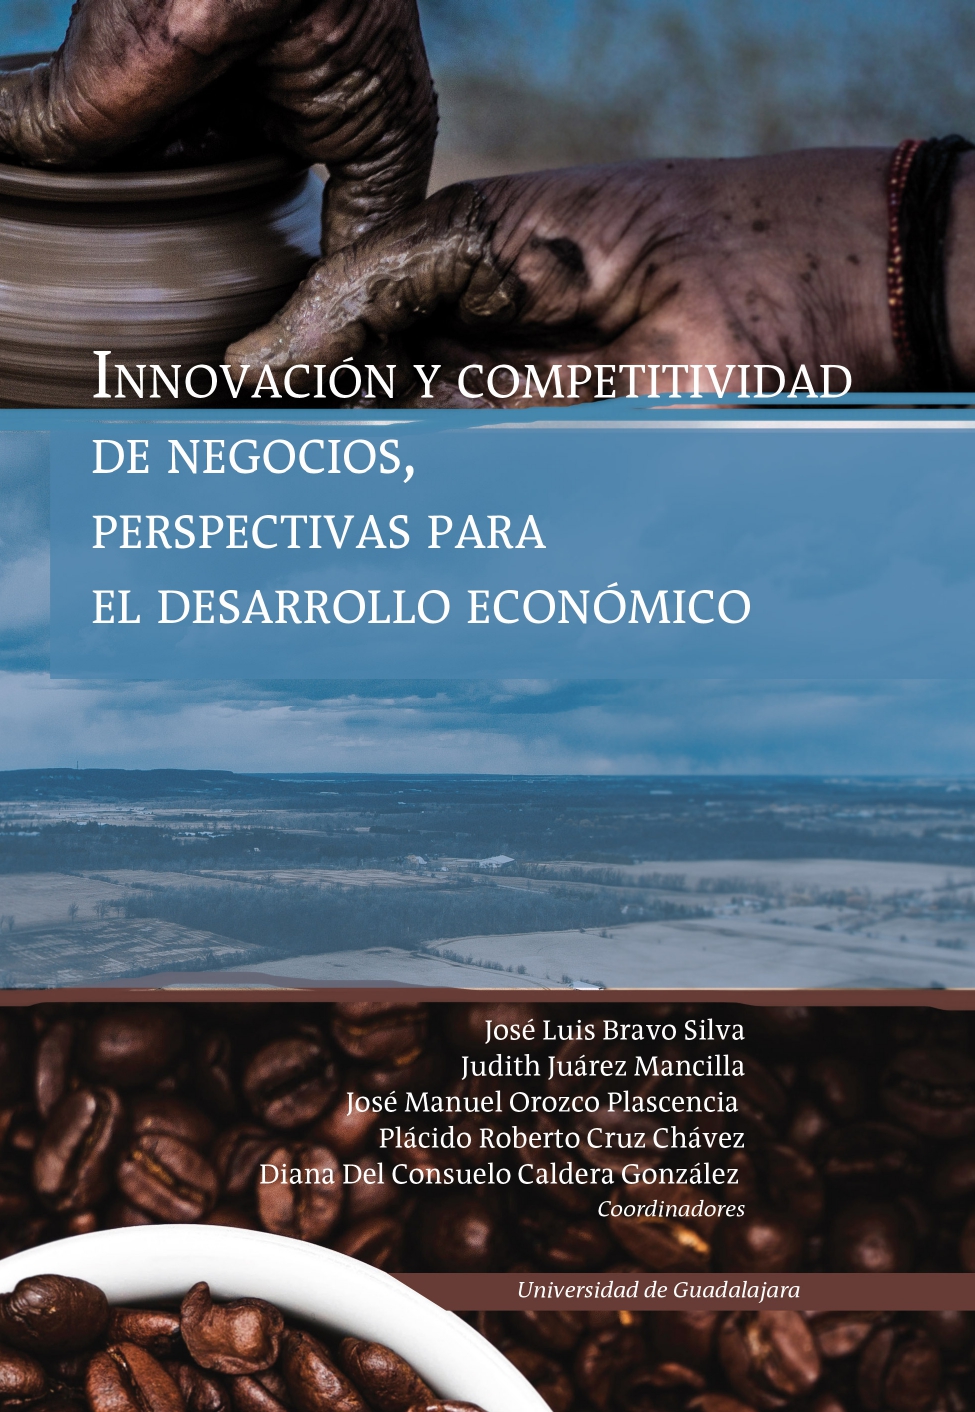 Innovación y competitividad de negocios, perspectivas para el desarrollo económico<br />
                                    